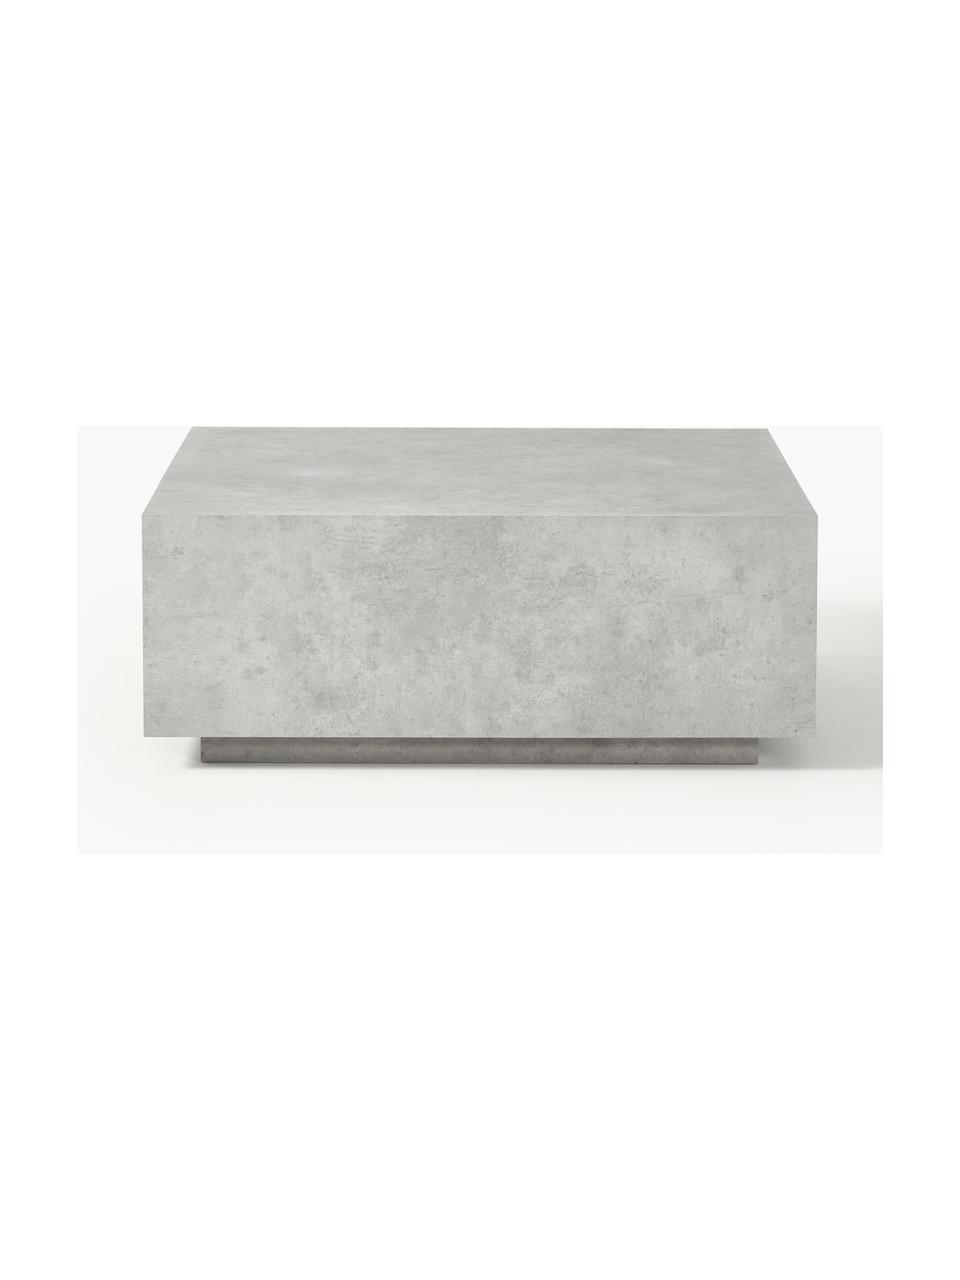 Konferenční stolek v betonovém vzhledu Lesley, Dřevovláknitá deska střední hustoty (MDF) pokrytá melaminovou fólií, mangové dřevo, Šedý betonový vzhled, matný, Š 90 cm, H 90 cm